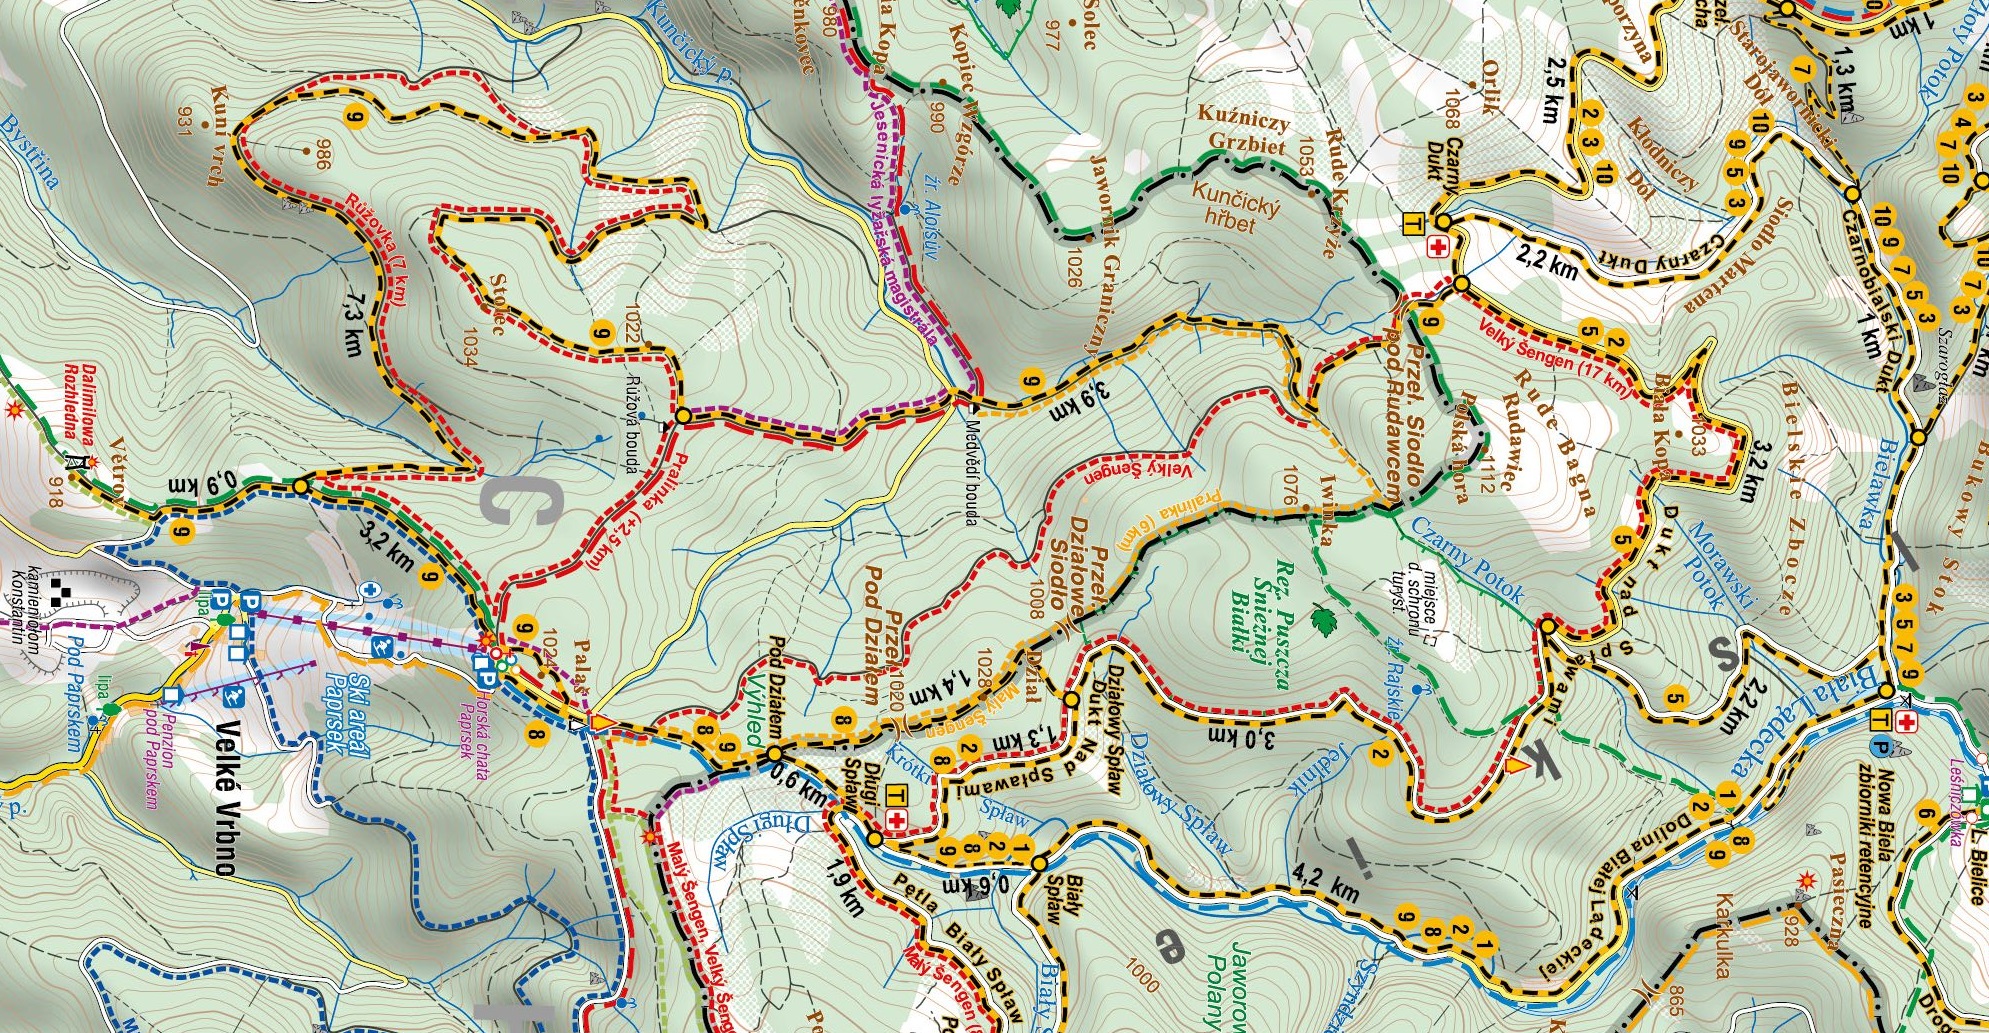 Mapa trasa nr. 9:  Bielice - Dolina Białej Lądeckiej - Biały Spław - polana Palaš - schronisko Paprsek - trasa czeska Rużovka (kierunek Góra Vetrov) - wieża widokowa na Górze Vetrov - Pętla czeska Rużovka - Jesenicka Magistrala - Medvedi bouda - V Mokrinach - Velky Szengen- Dukt nad Spławami - Czarny Dukt - Bielice.